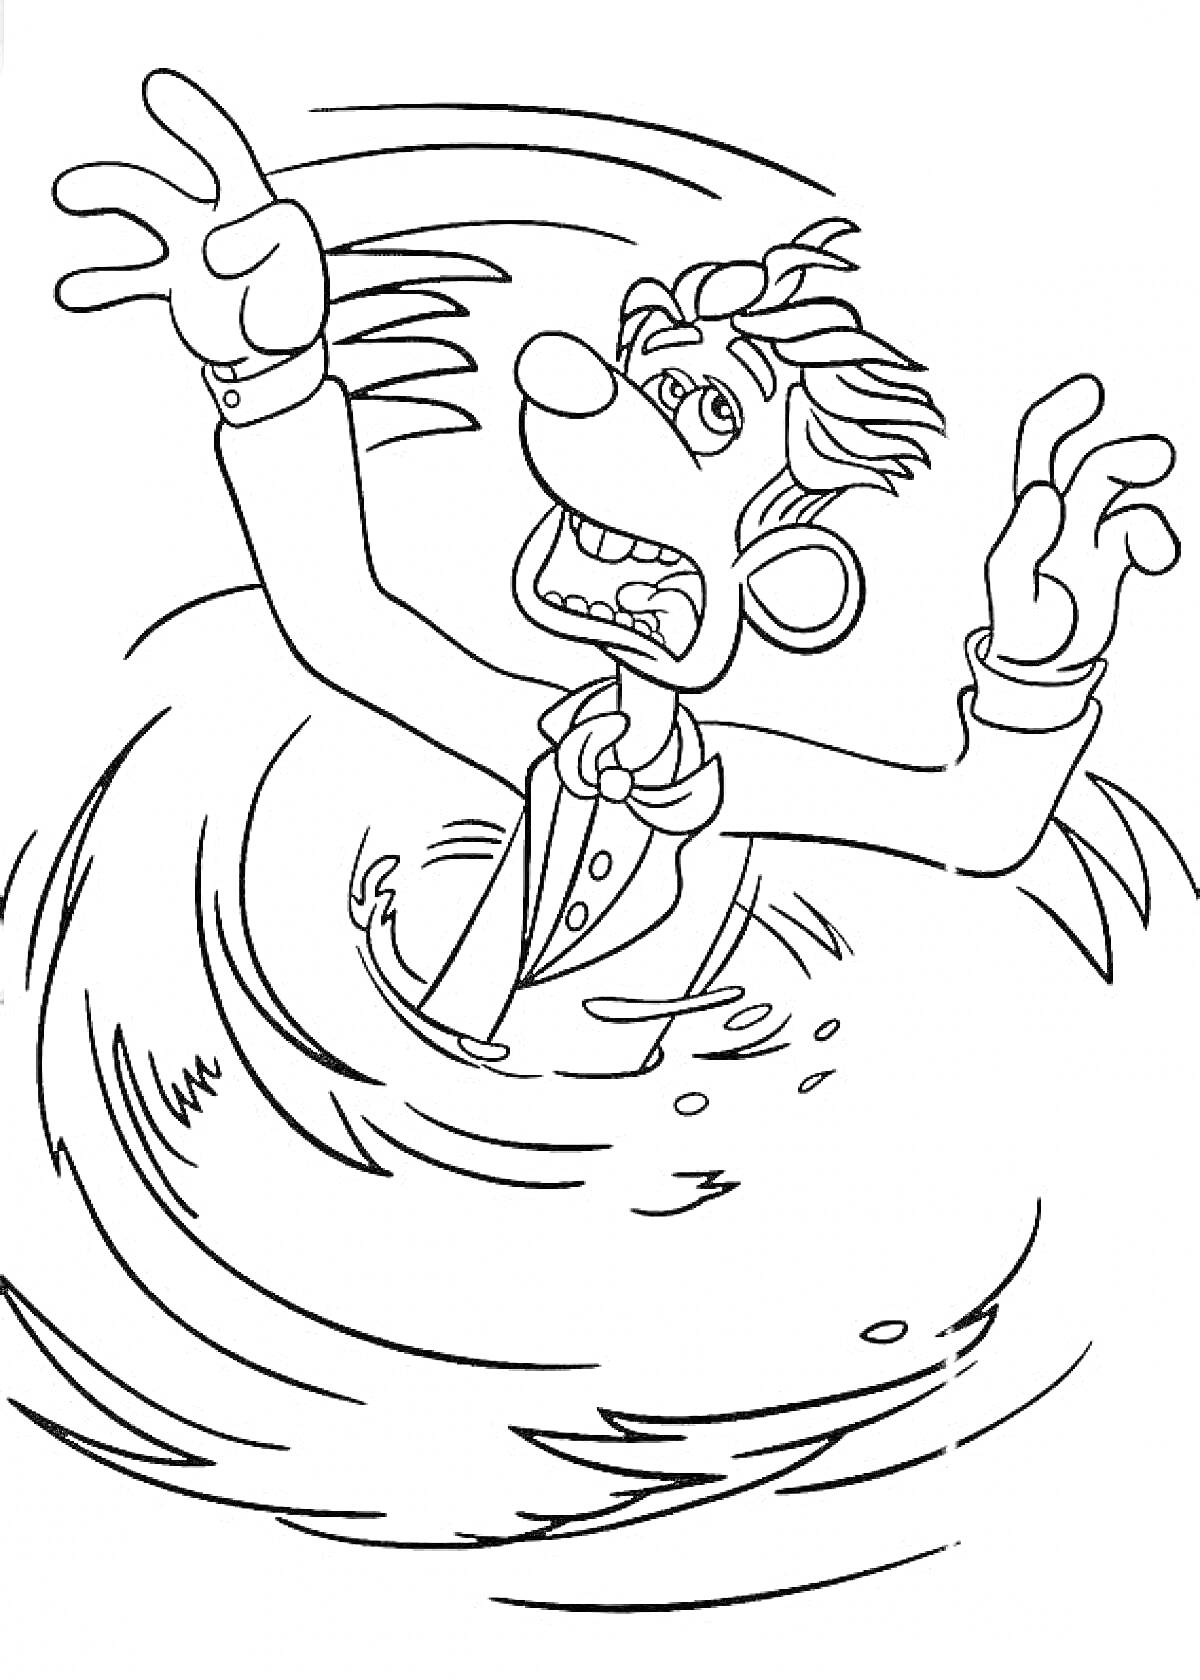 персонаж из мультфильма, попавший в водоворот